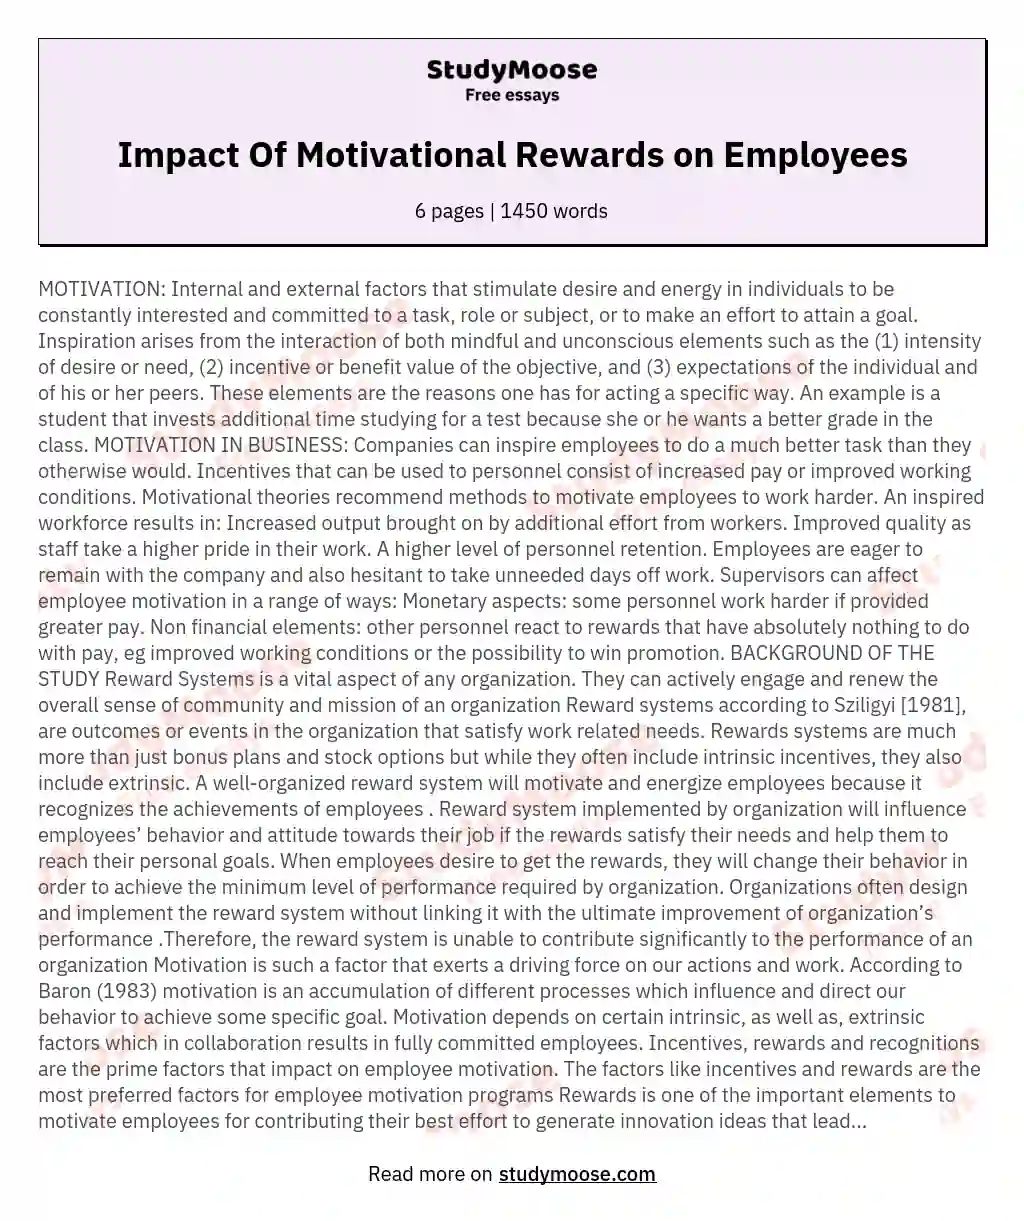 Impact Of Motivational Rewards on Employees essay